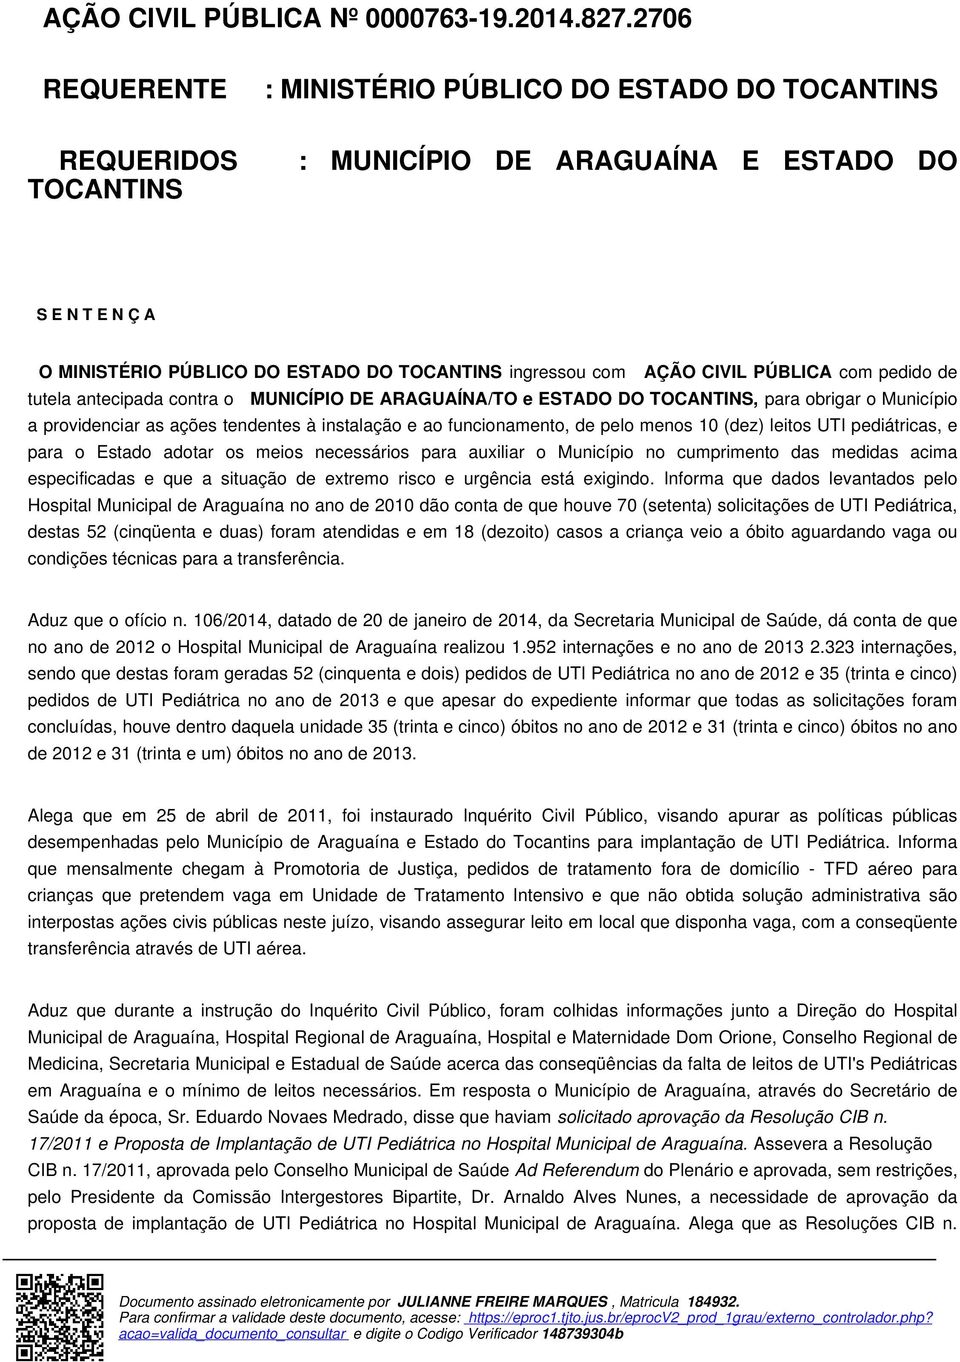 CIVIL PÚBLICA com pedido de tutela antecipada contra o MUNICÍPIO DE ARAGUAÍNA/TO e ESTADO DO TOCANTINS, para obrigar o Município a providenciar as ações tendentes à instalação e ao funcionamento, de